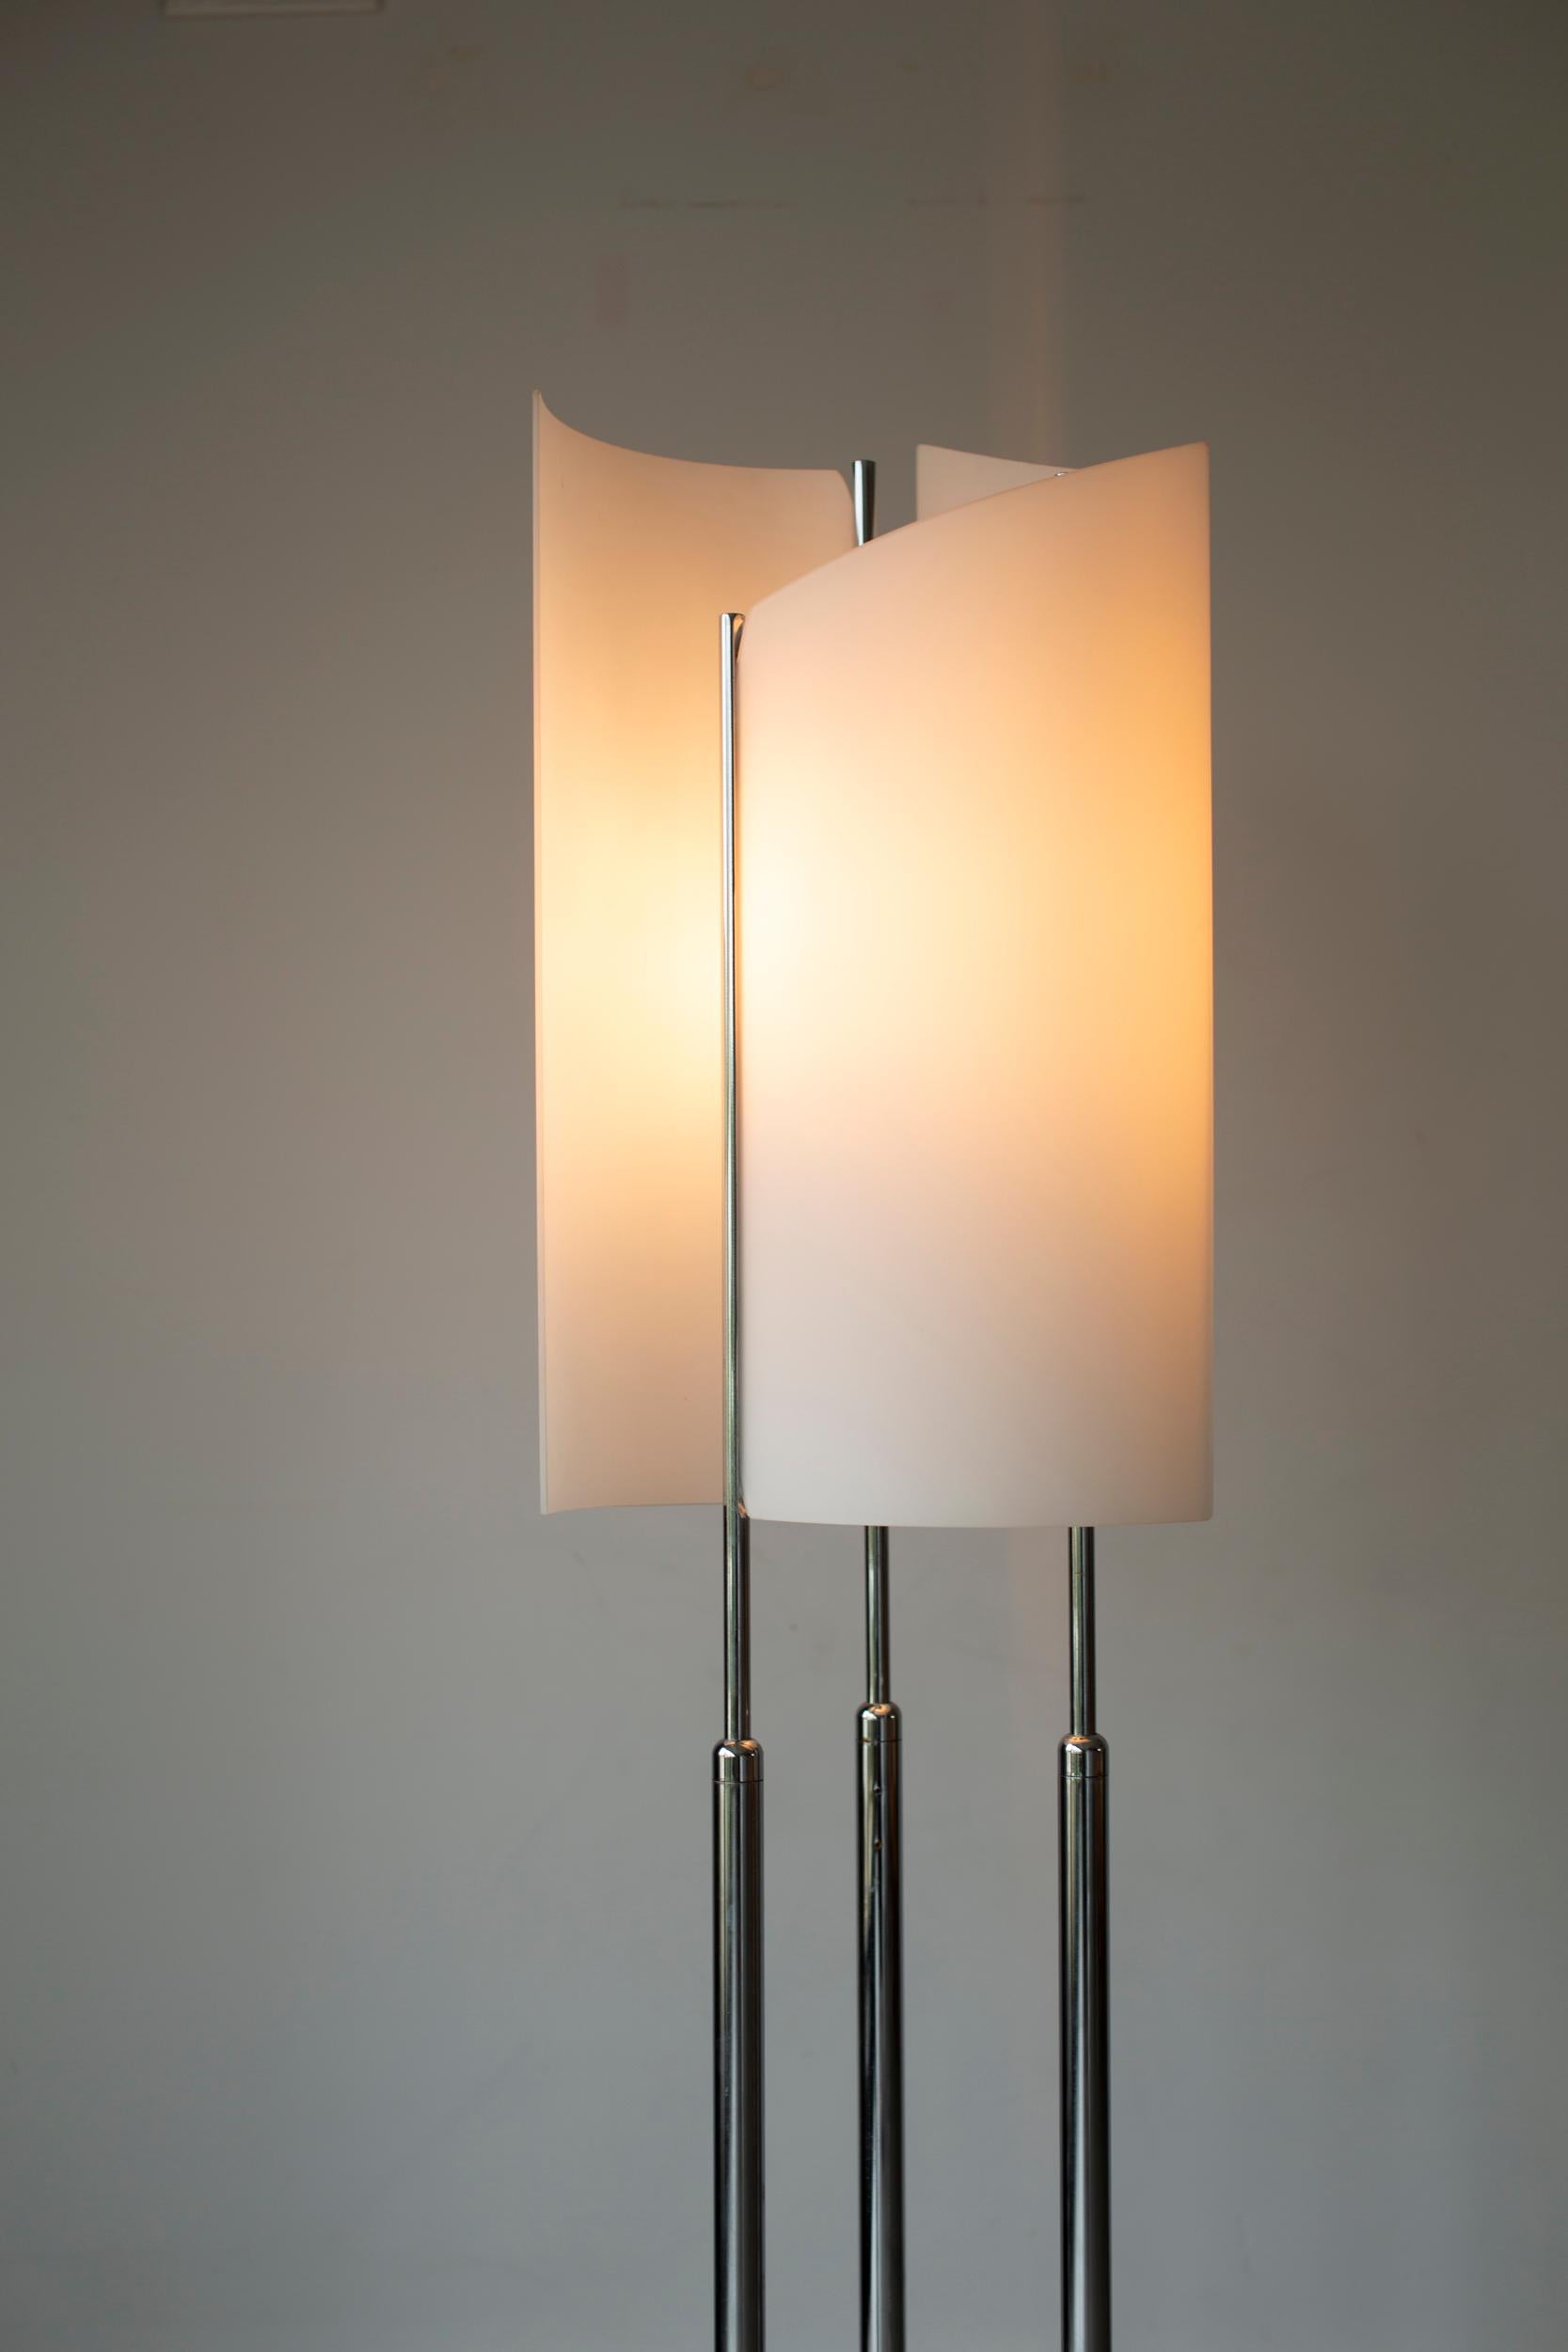 Beleuchten Sie Ihren Raum mit dem Vintage-Charme der Stehleuchte Arianna von Bruno Gecchelin! Diese schrullige Lampe im Stil der 70er Jahre auf einem Marmorfuß verleiht jedem Raum eine verspielte Note. Mit ihrem einzigartigen Design und ihrem warmen